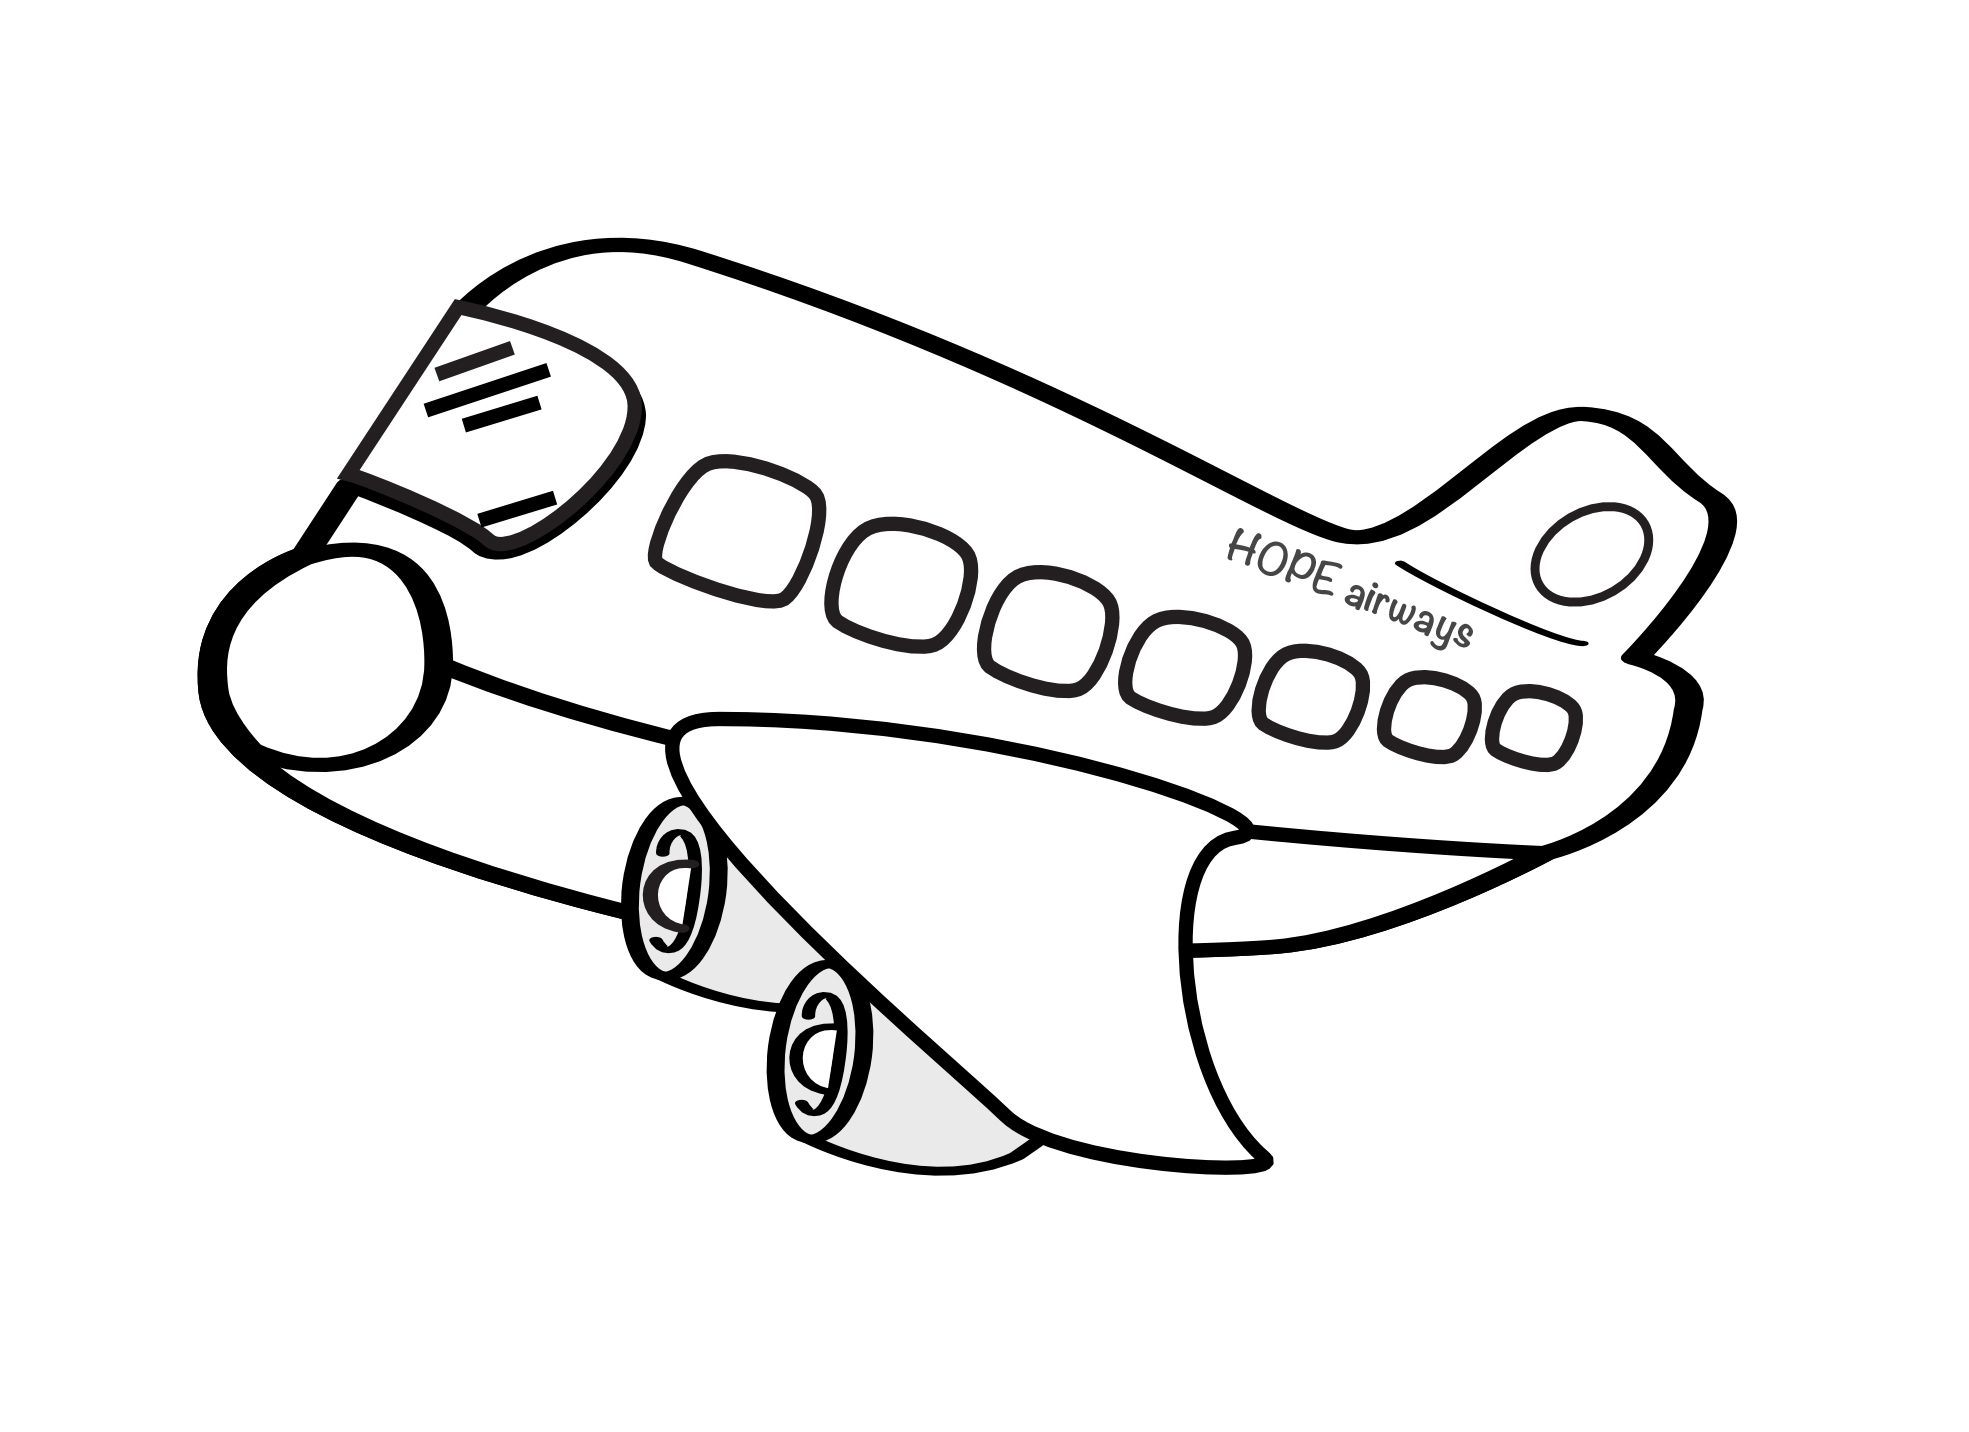 Simple airplane drawings - bdagirl